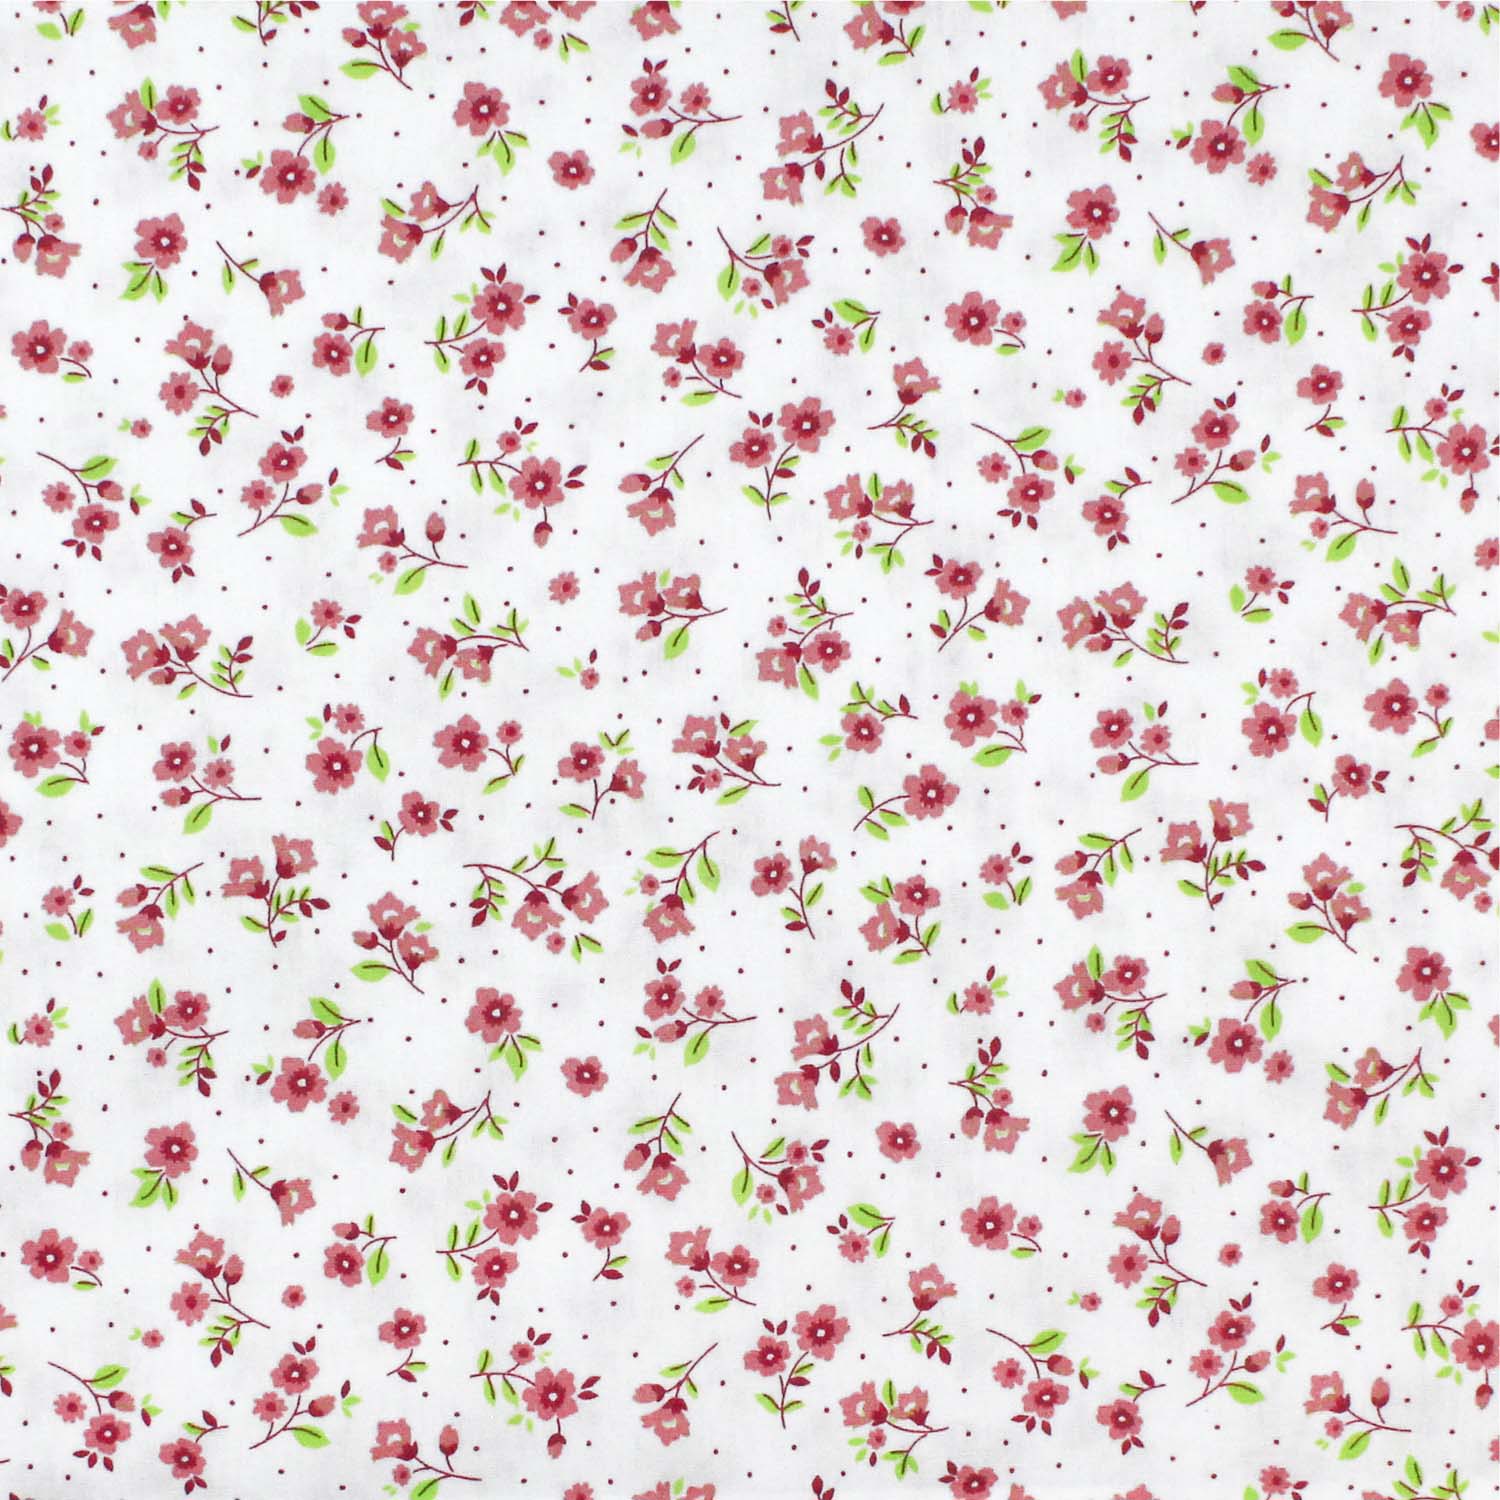 tecido-tricoline-flores-pequenas-coral-fundo-branco-della-aviamentos-10956